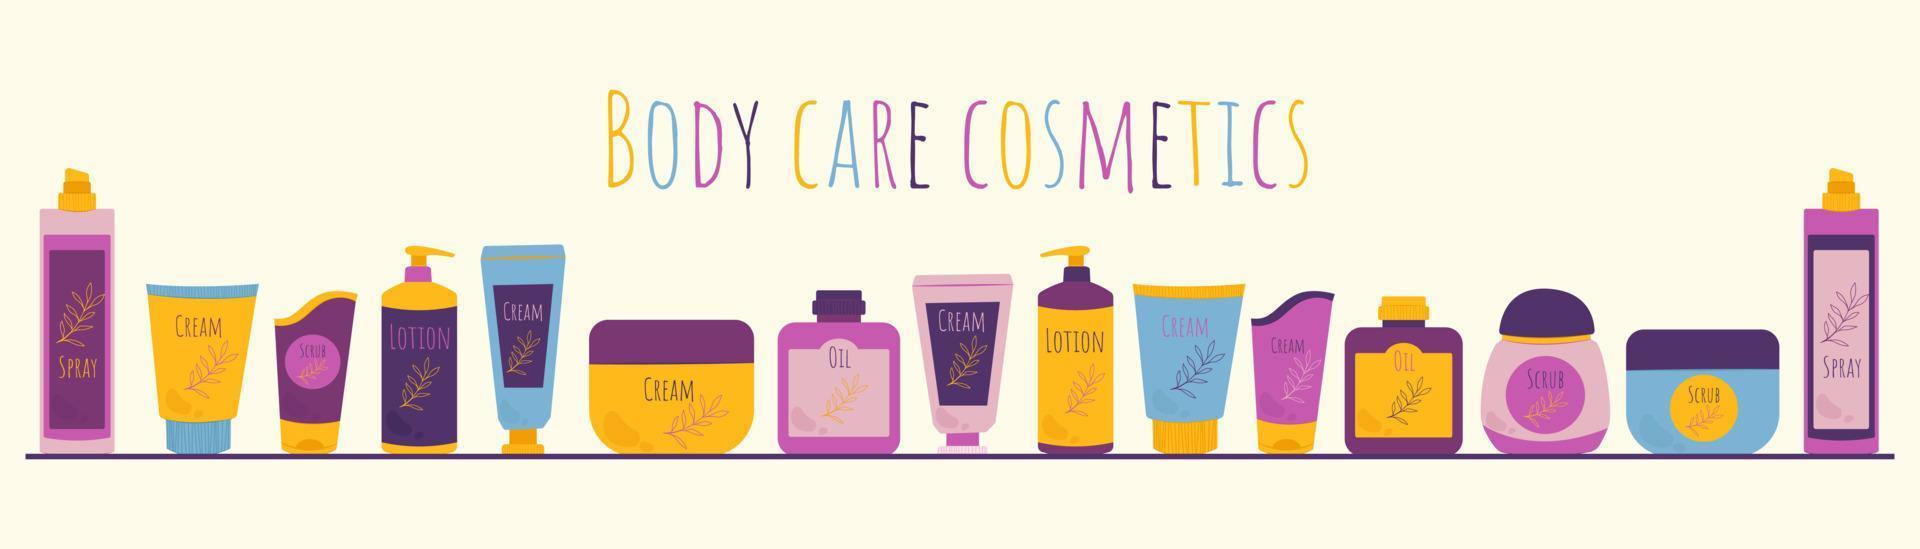 frascos y tubos con banner de cosméticos. cosméticos para el cuidado del cuerpo. ilustración vectorial en estilo plano. vector